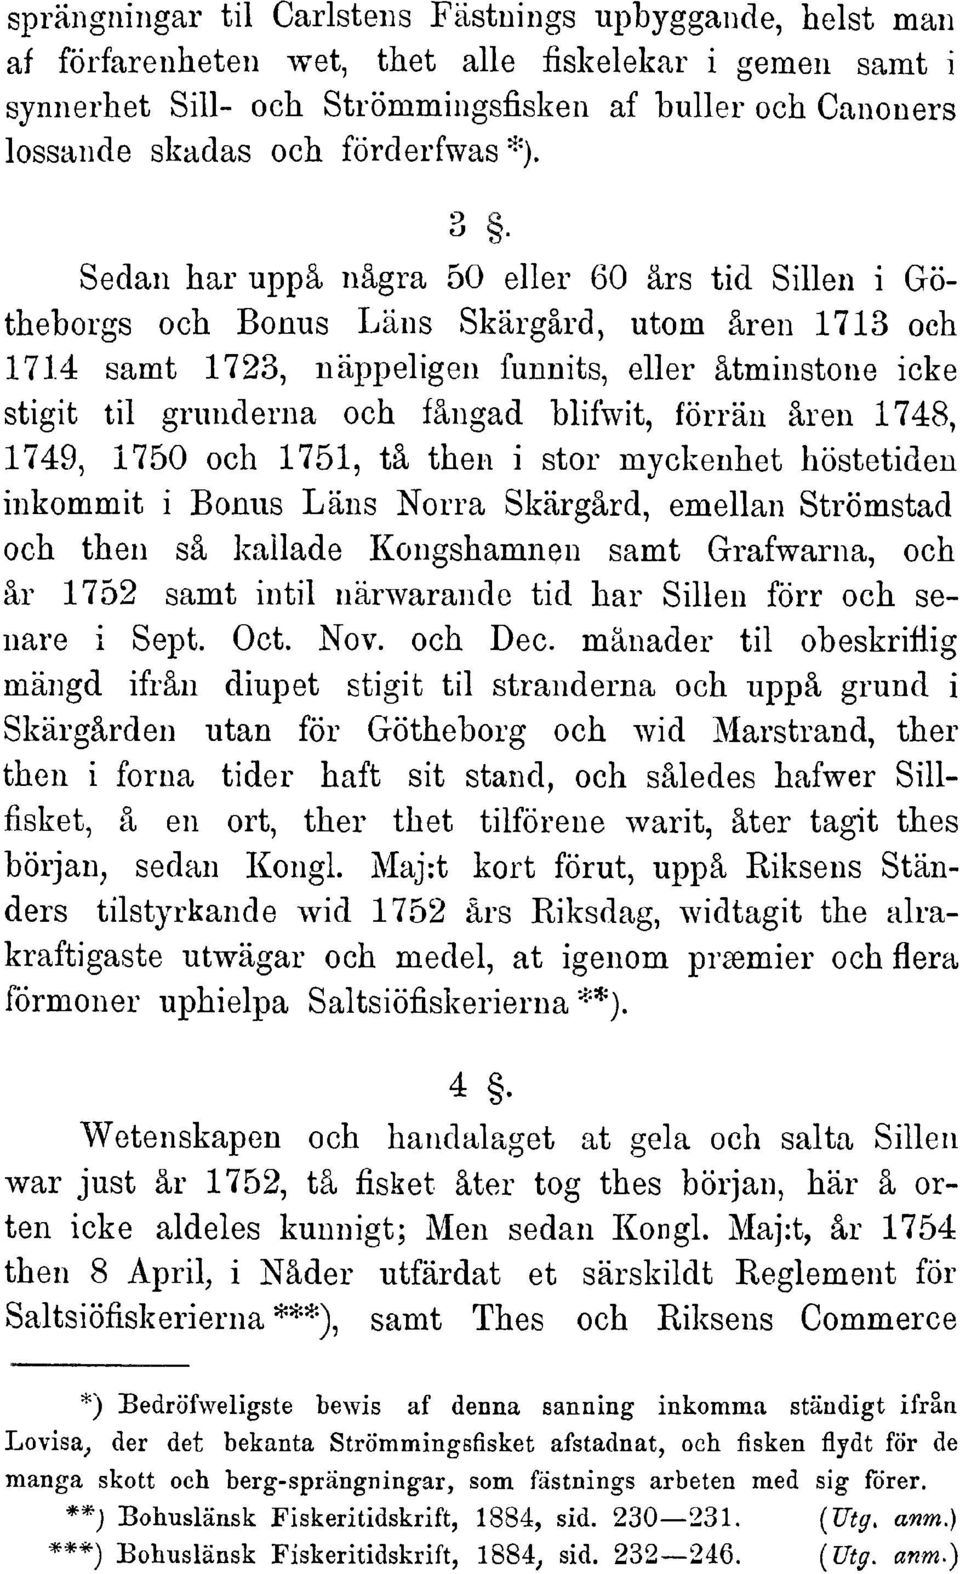 3 Sedan har uppä nägra 50 eller 60 ärs tid Sillen i Götheborgs och Bonus Läns Skärgärd, utom ären 1713 och 1714 samt 1723, näppeligen funnits,eller ätminstone icke stigittil grunderna och fängad